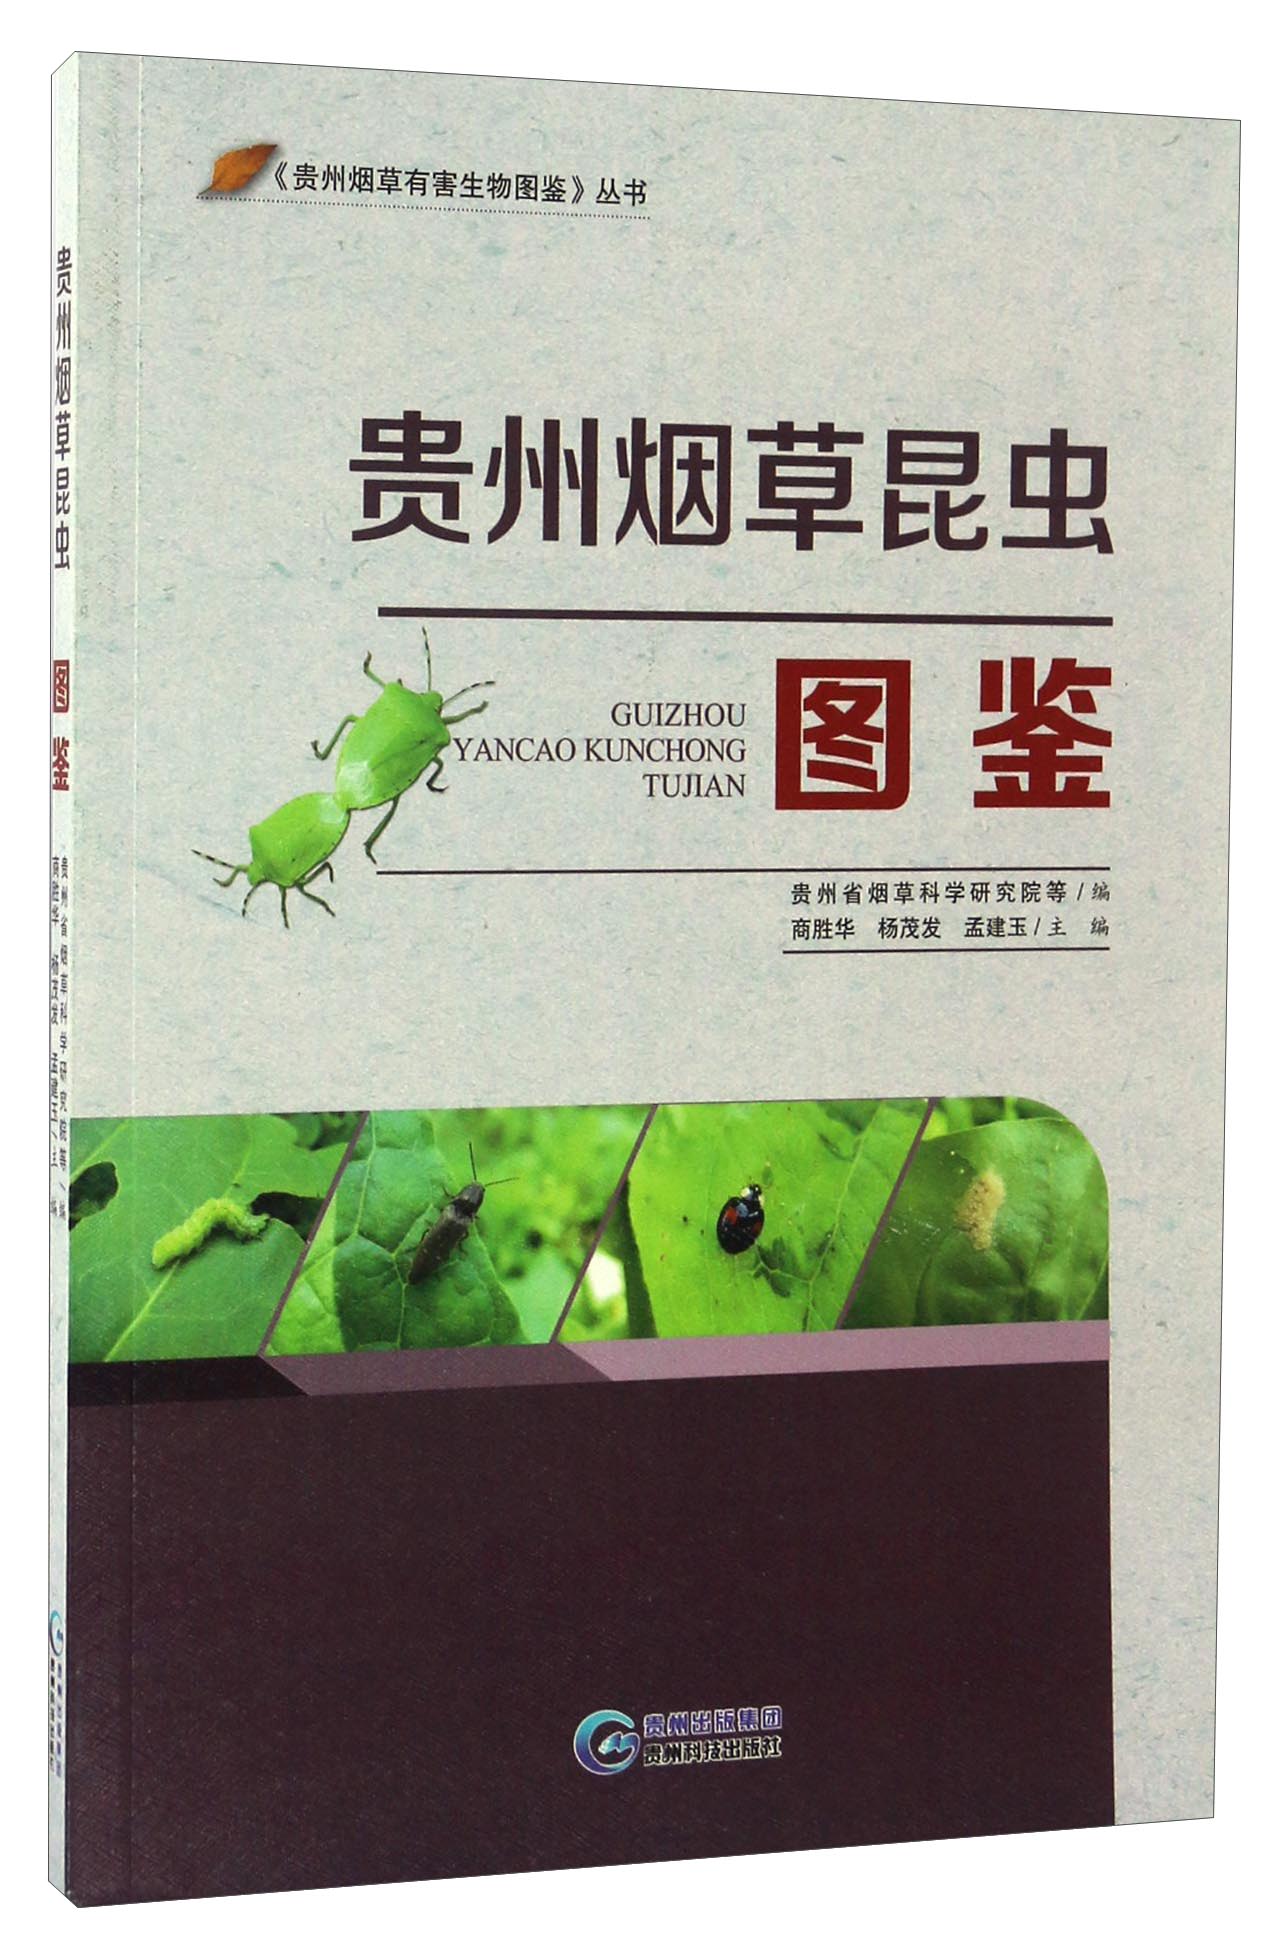 贵州烟草昆虫图鉴/《贵州烟草有害生物图鉴》丛书 txt格式下载